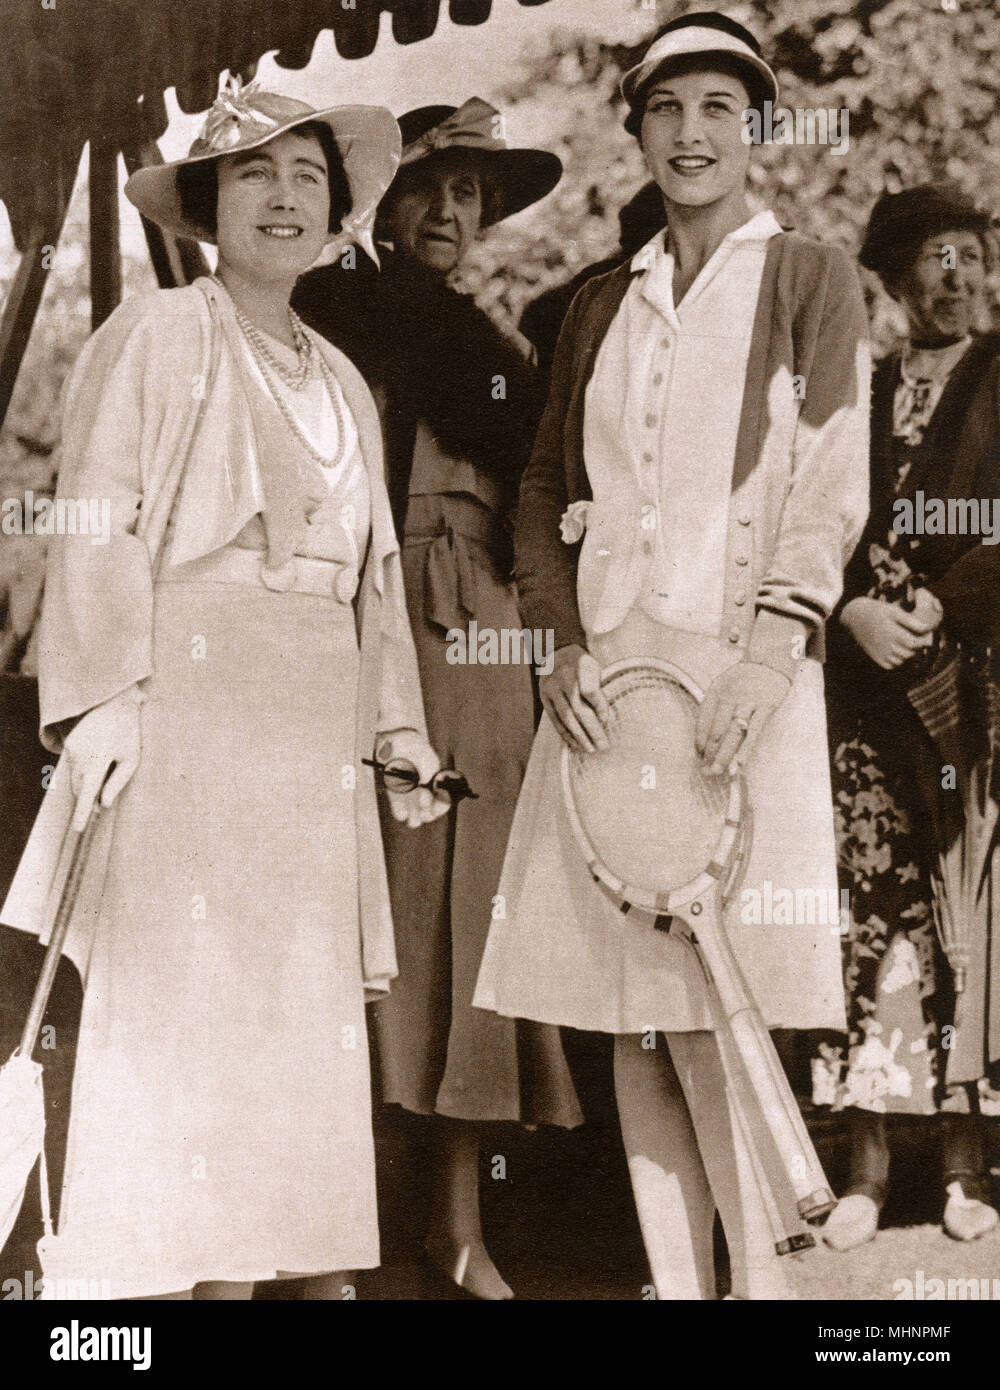 Isabel, Duquesa de York (más tarde Elizabeth, la Reina Madre, 1900-2002) y Helen Wills Moody (1905-1998) en el Campeonato de Wimbledon Lawn Tennis. La princesa Marie Louise de Schleswig-Holstein (1872-1956) se encuentra detrás de la Fecha: 1935 Foto de stock